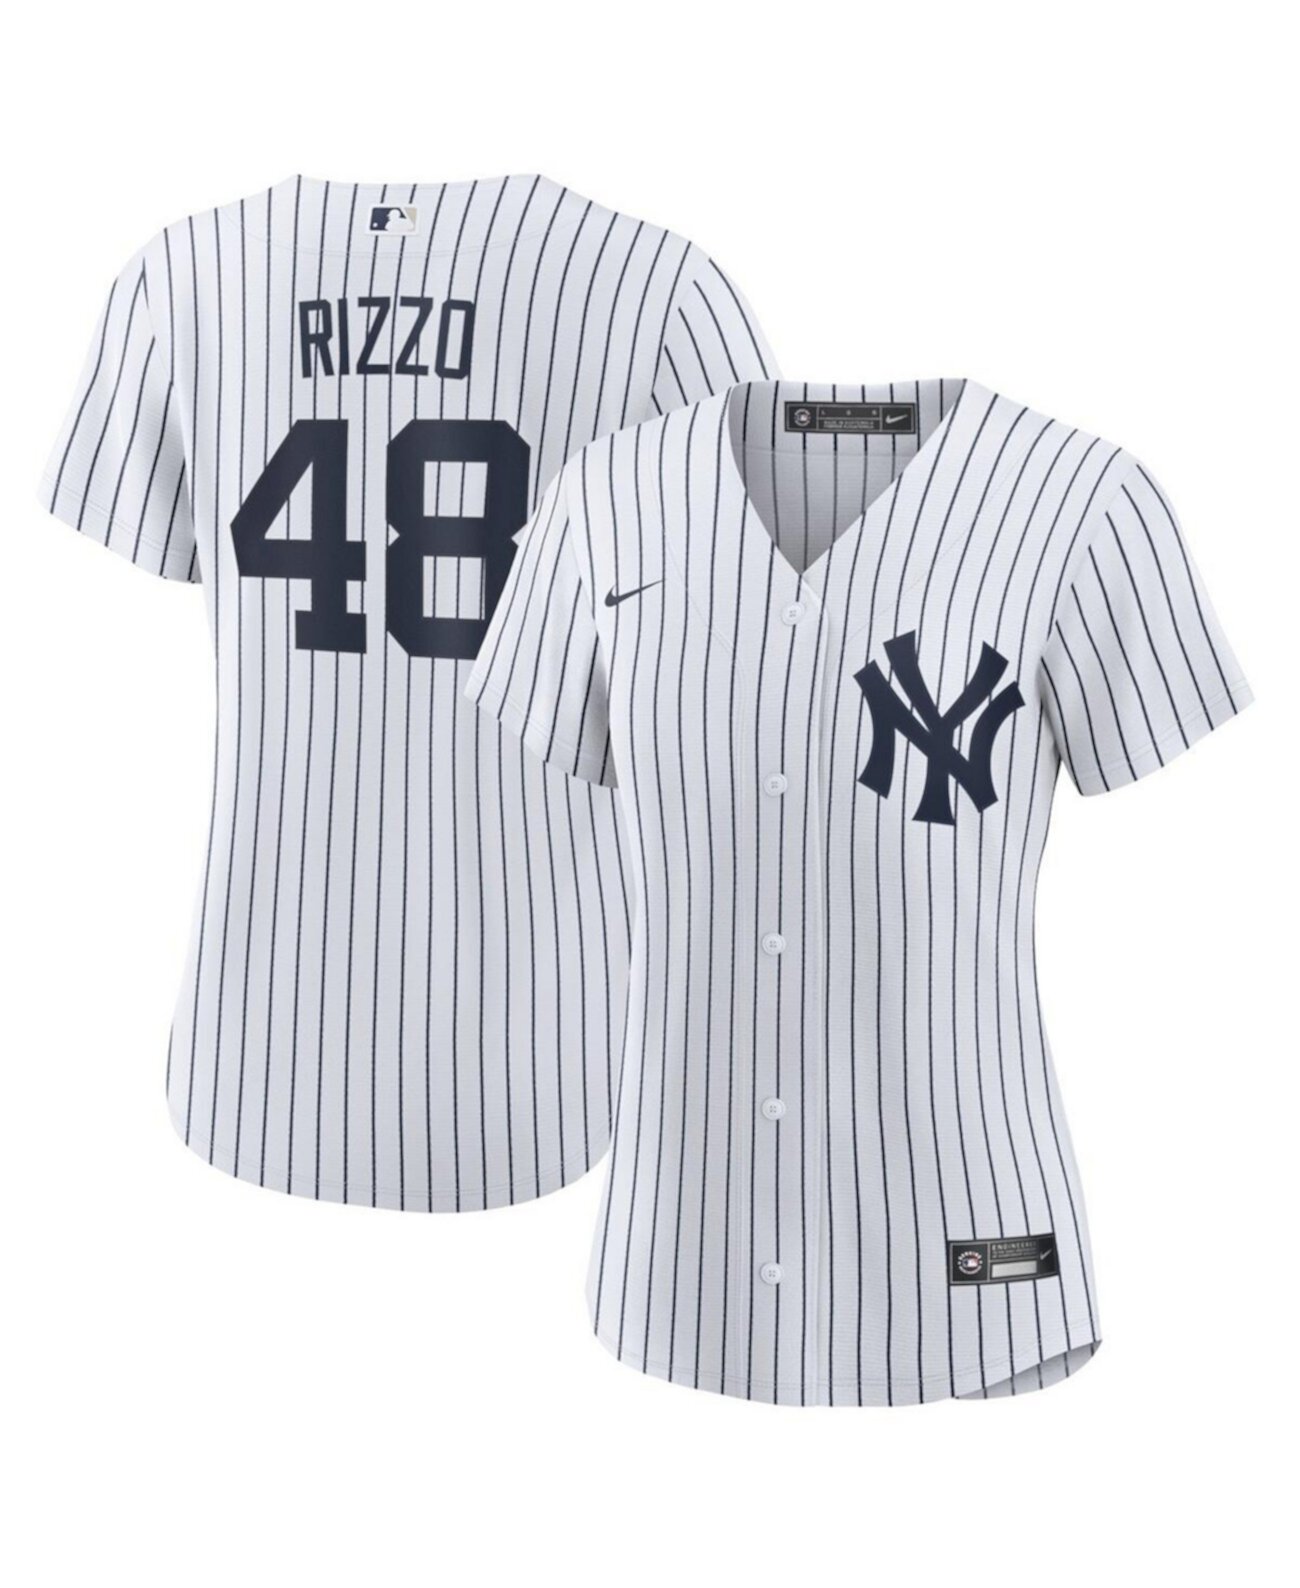 Женская футболка Энтони Риццо белого цвета «Нью-Йорк Янкиз» домашняя официальная копия джерси игрока Nike